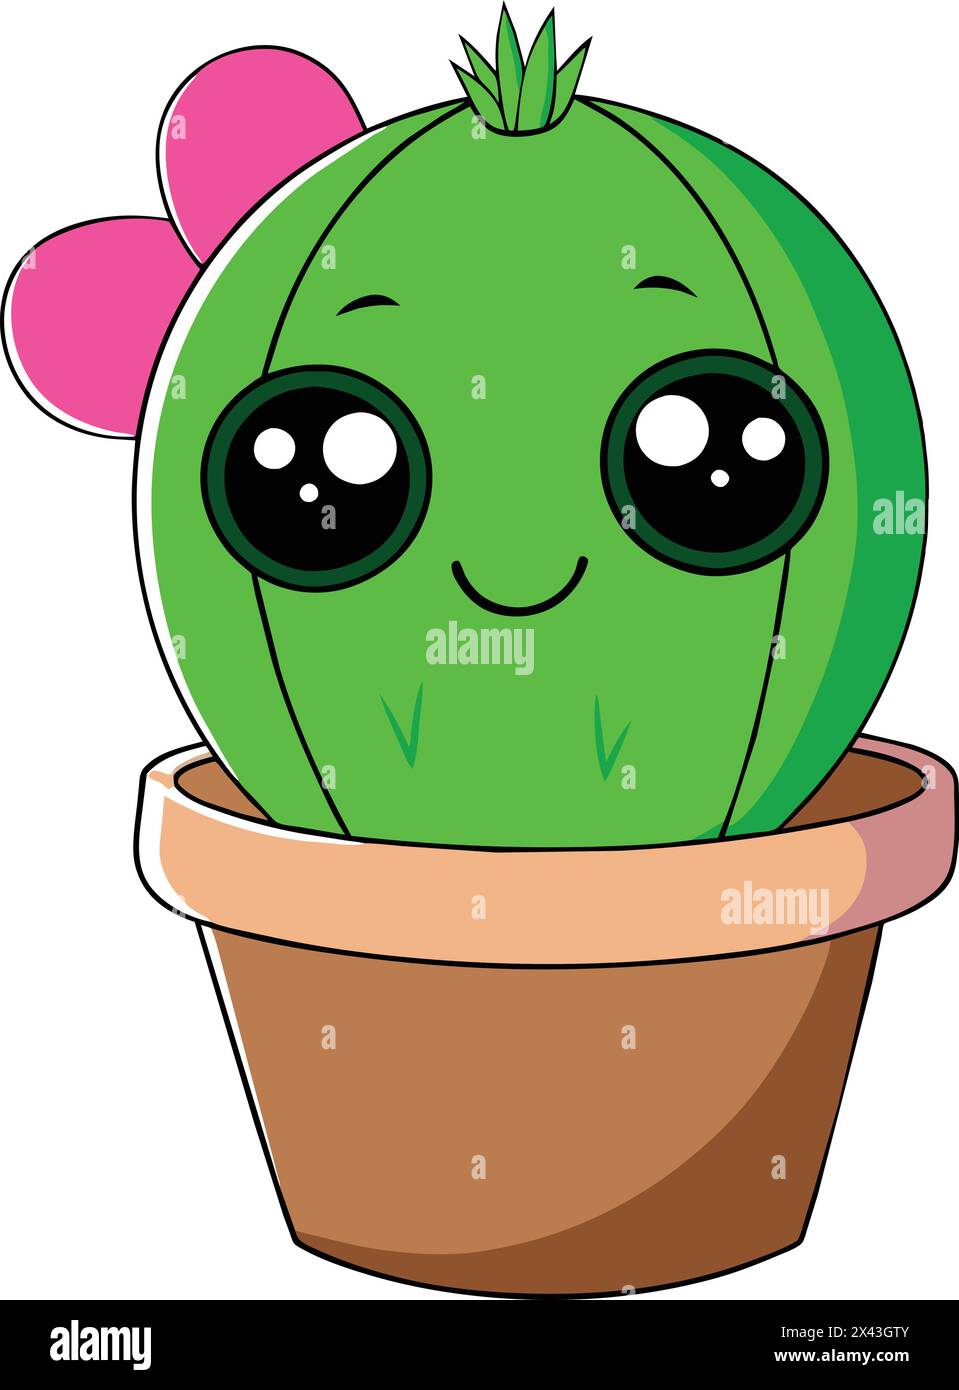 Cute Cactus Vector: Vibrante illustrazione per progetti creativi Illustrazione Vettoriale